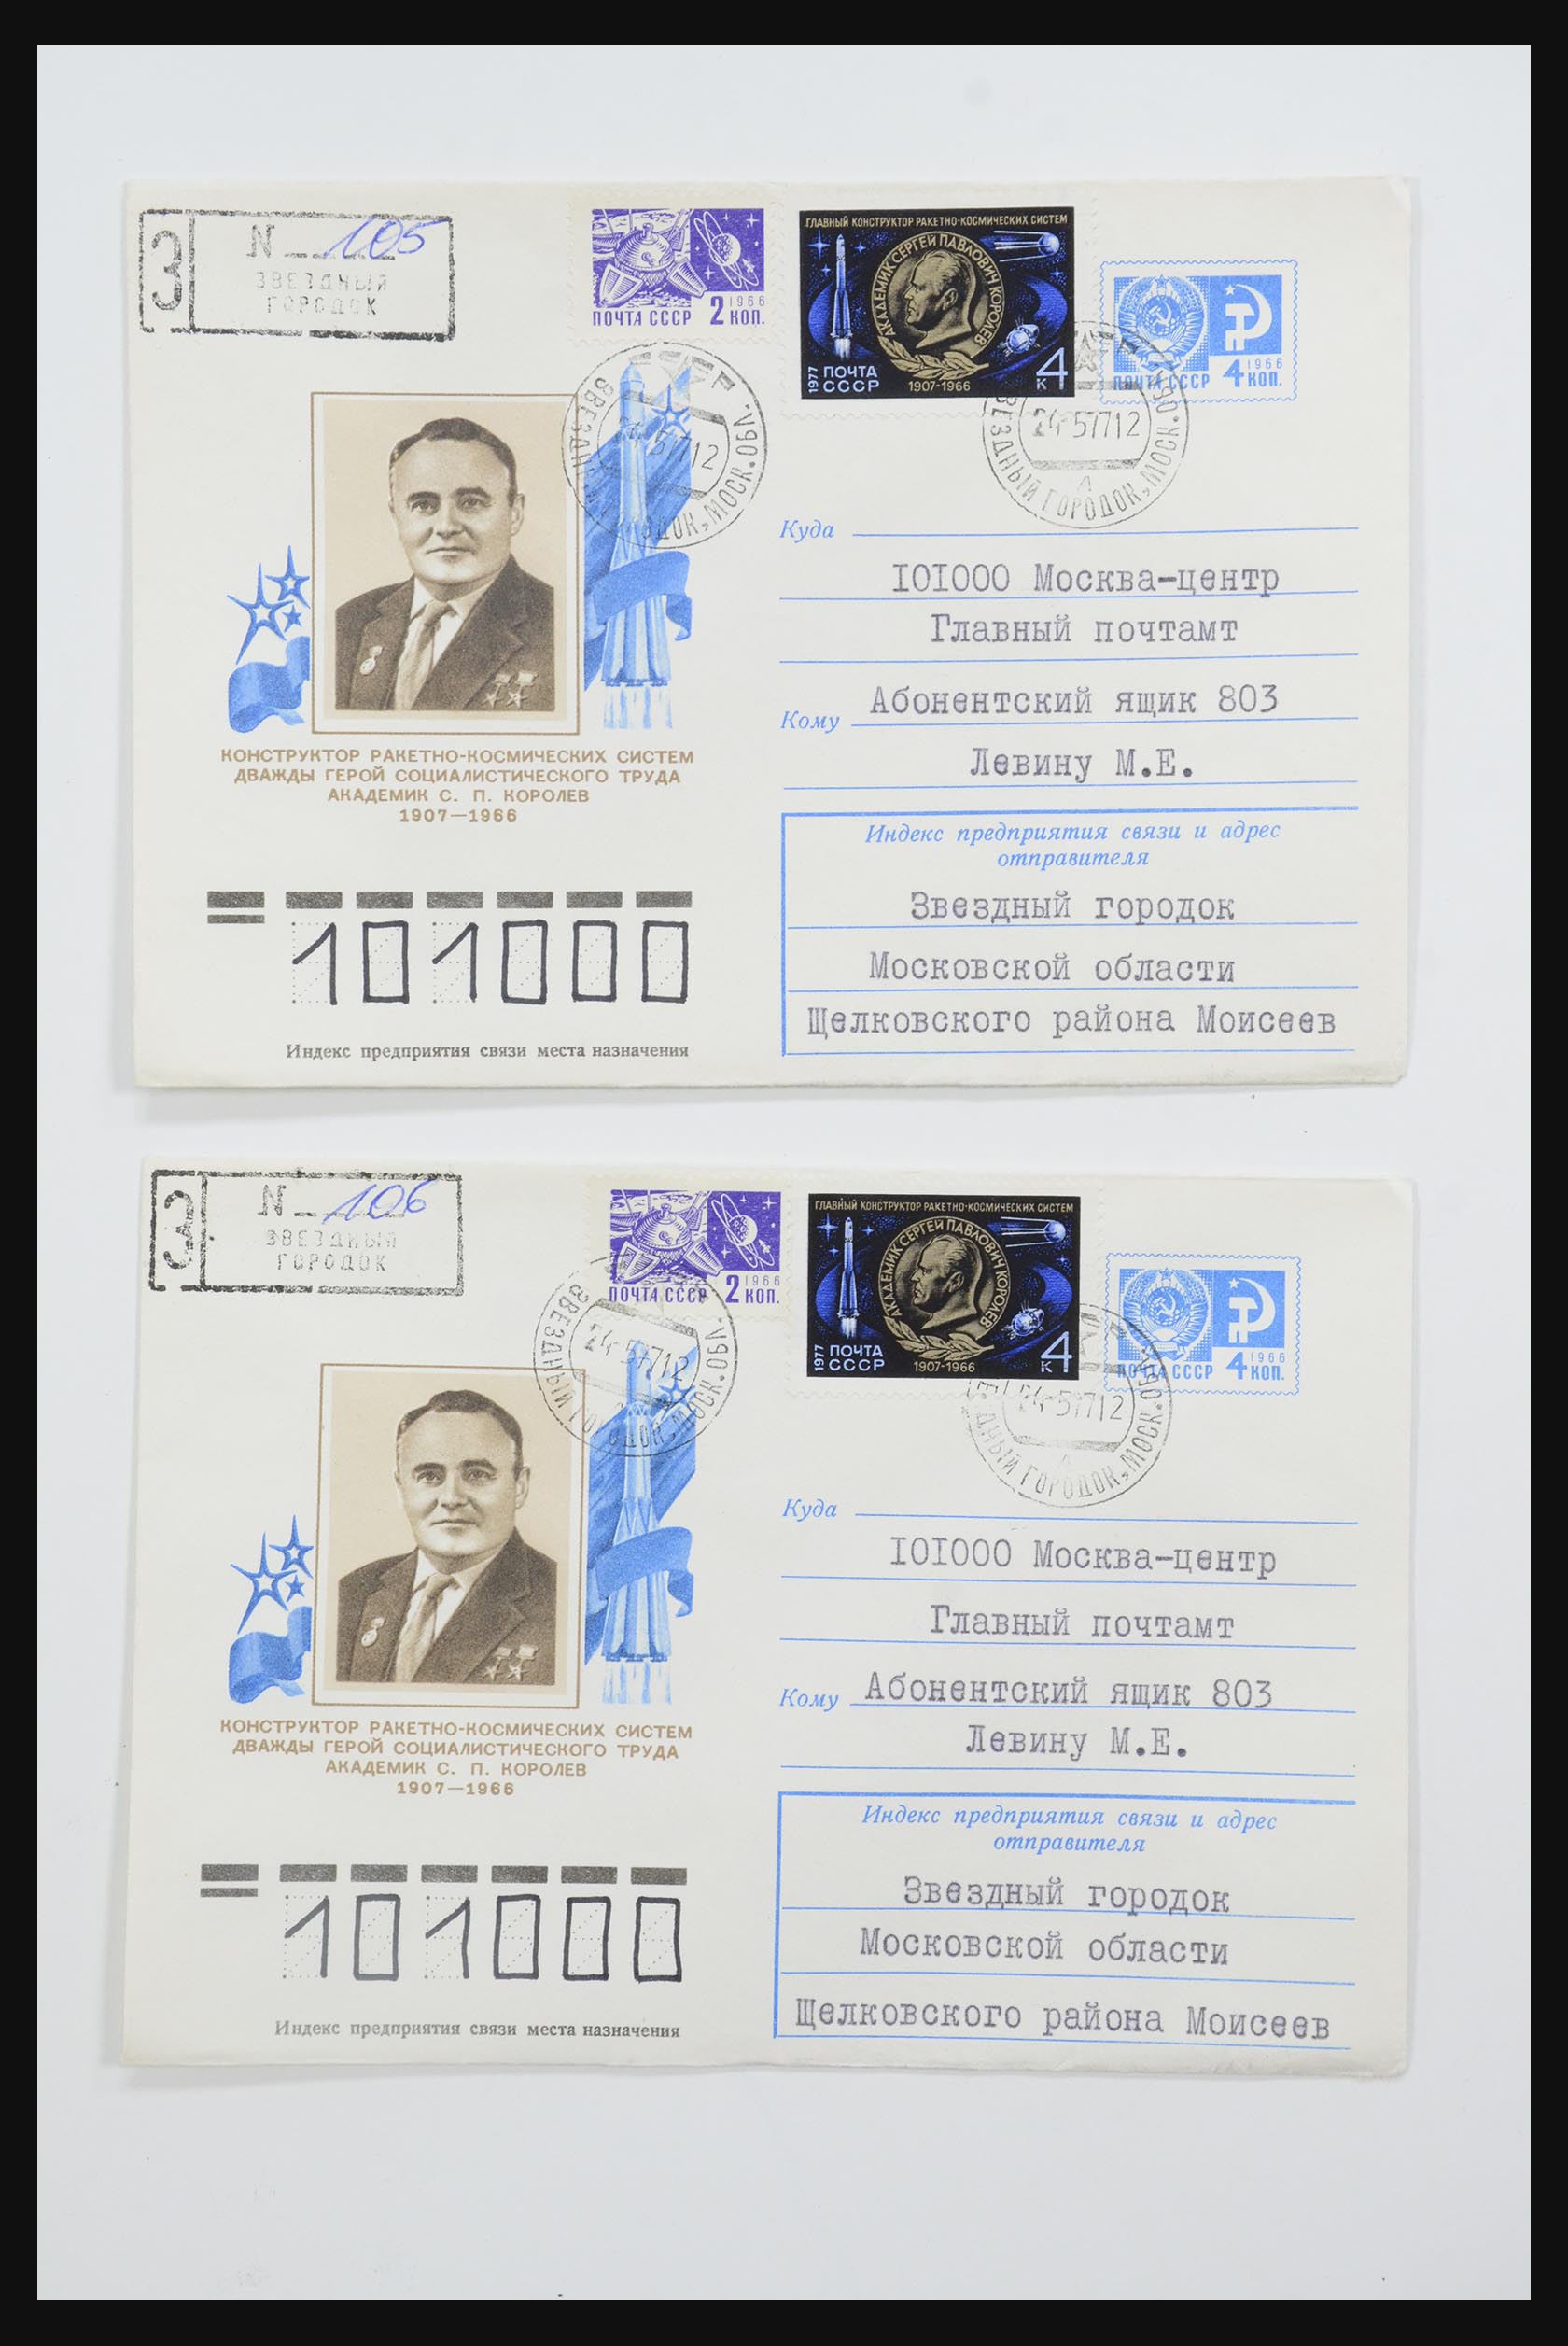 31605 0017 - 31605 Rusland postwaardestukken jaren 50-60.